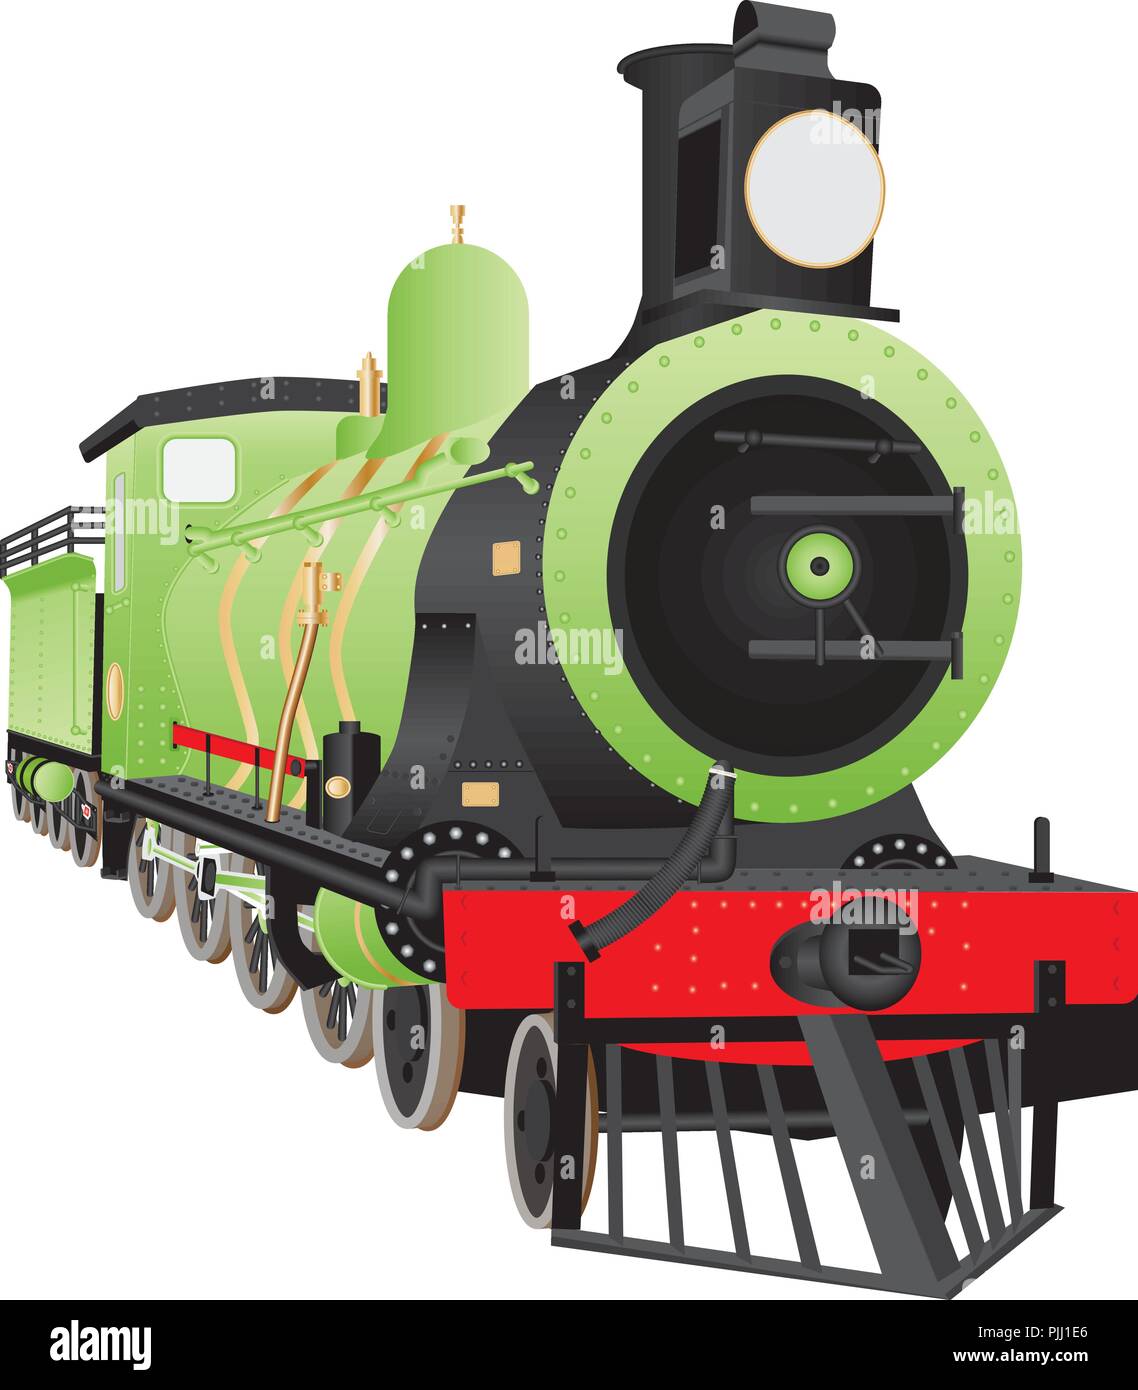 Une vieille roue de 12 ou 480 d'offres de fer vapeur Locomotive avec un cowcatcher, projecteur et raccords en laiton peint dans un livre vert, rouge et noir livery iso Illustration de Vecteur